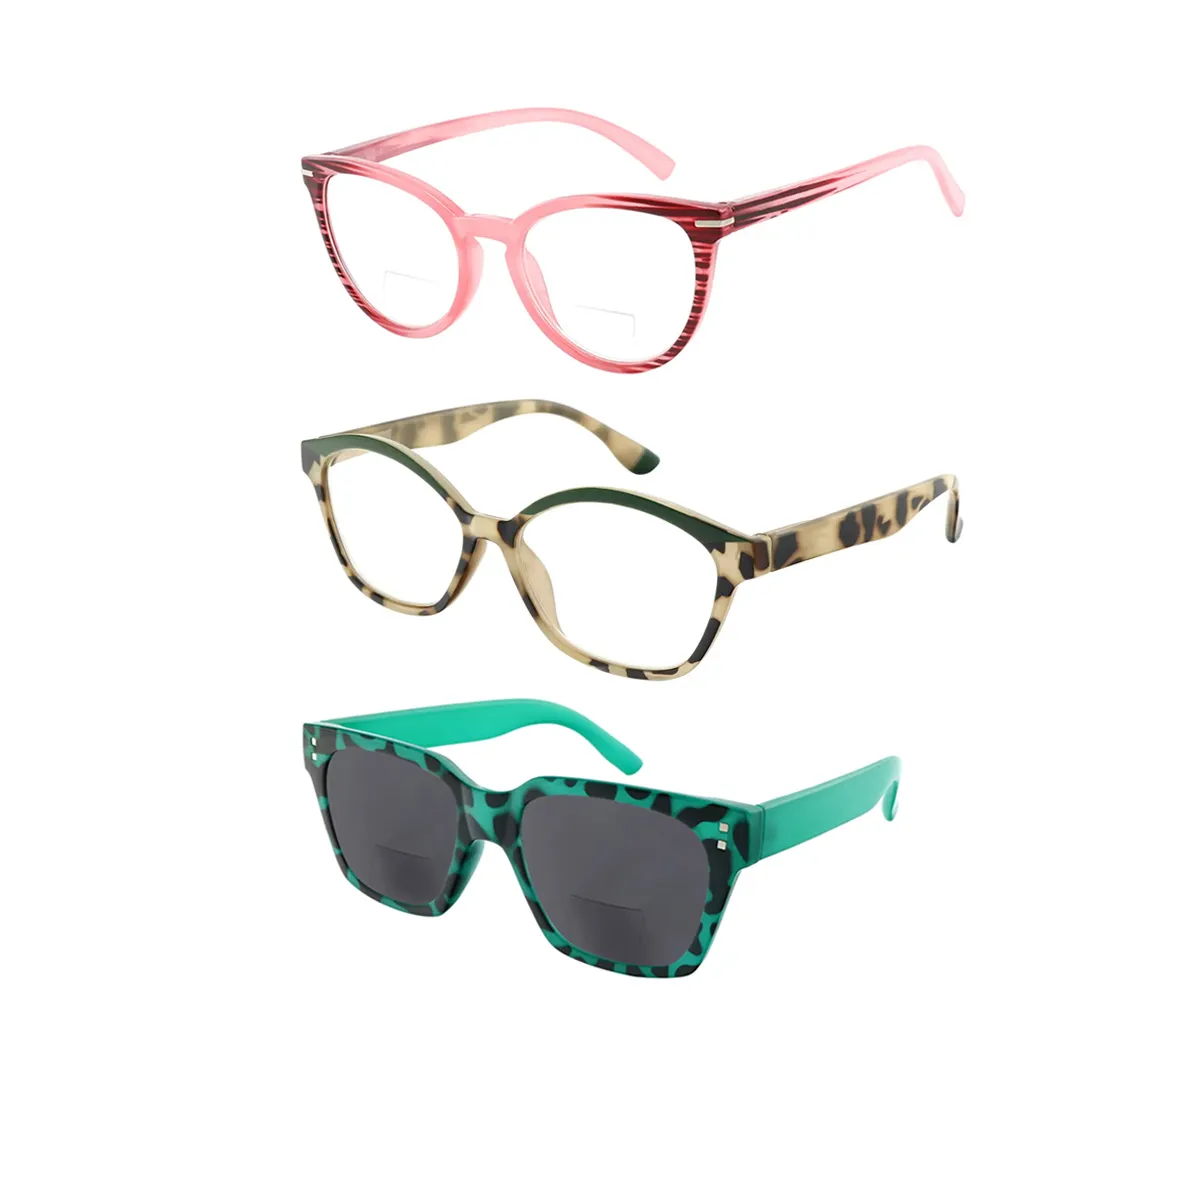 Fashion Cat-eye Multicolor Reading Glasses for Women & Men